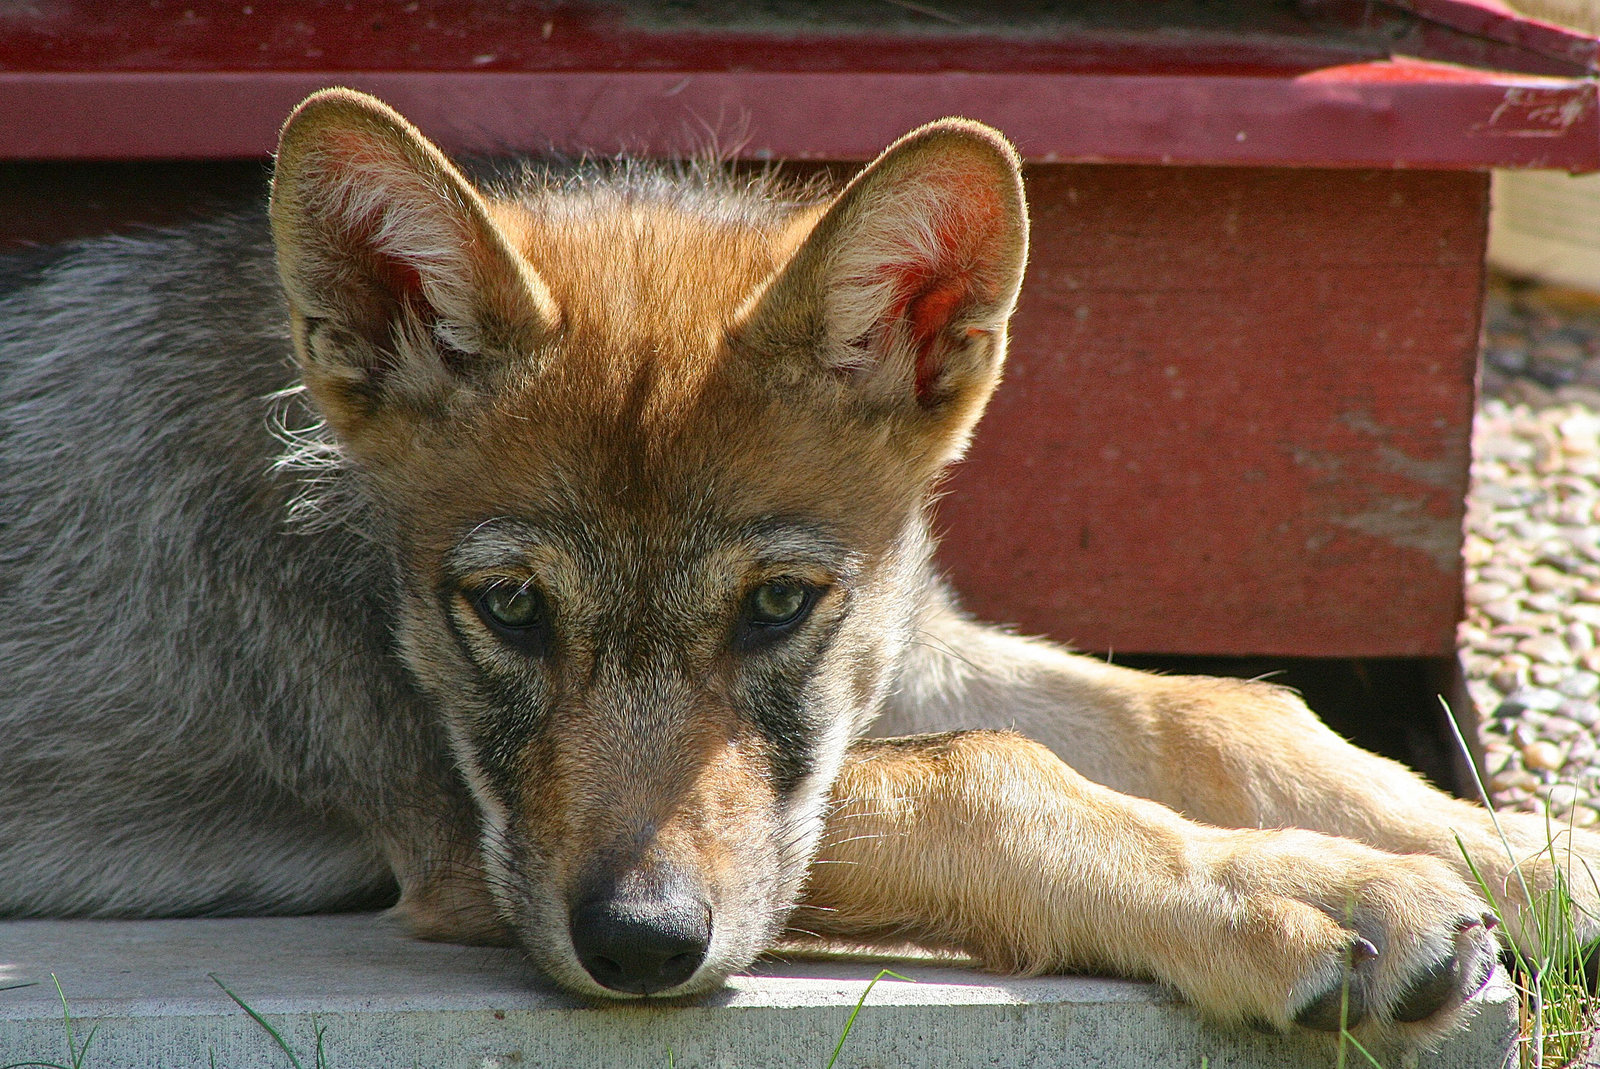 取物的意愿可能是狼祖先种群中存在的狼的特征